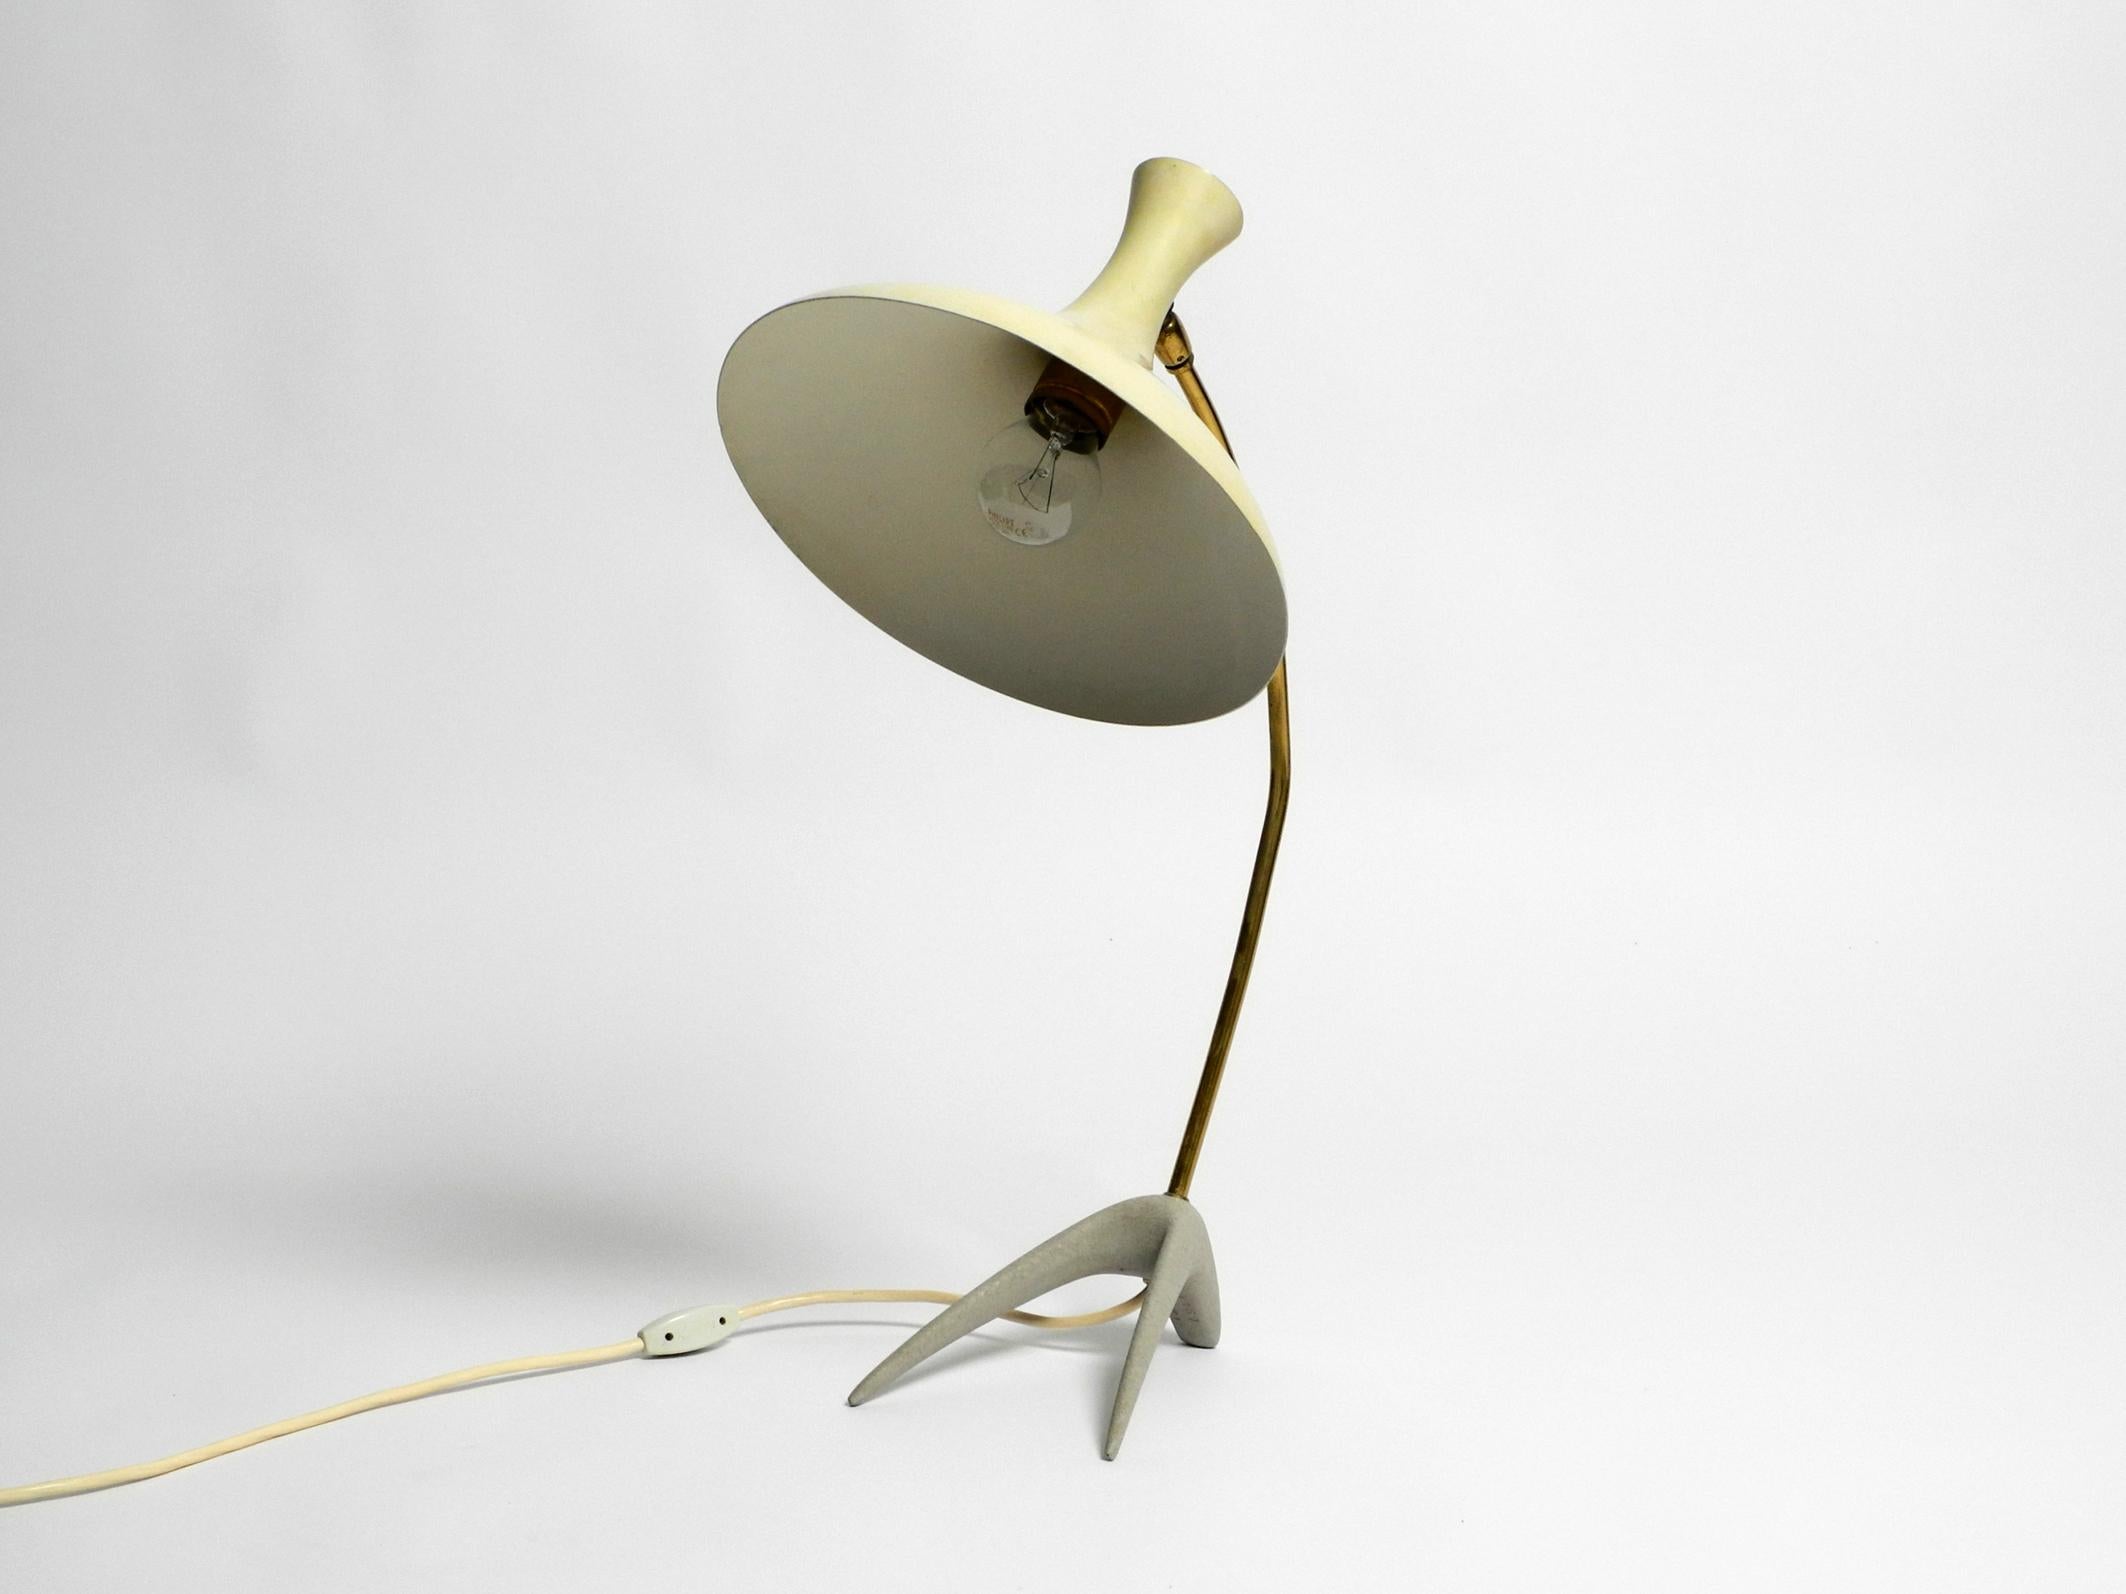 Rare lampe de table à patte d'oie de Karl Heinz Kinsky pour Cosack.
Magnifique design avec abat-jour réglable en état d'origine.
Il s'agit de la version la plus grande de cette lampe, avec une hauteur maximale de 58 cm.
Abat-jour en aluminium jaune,